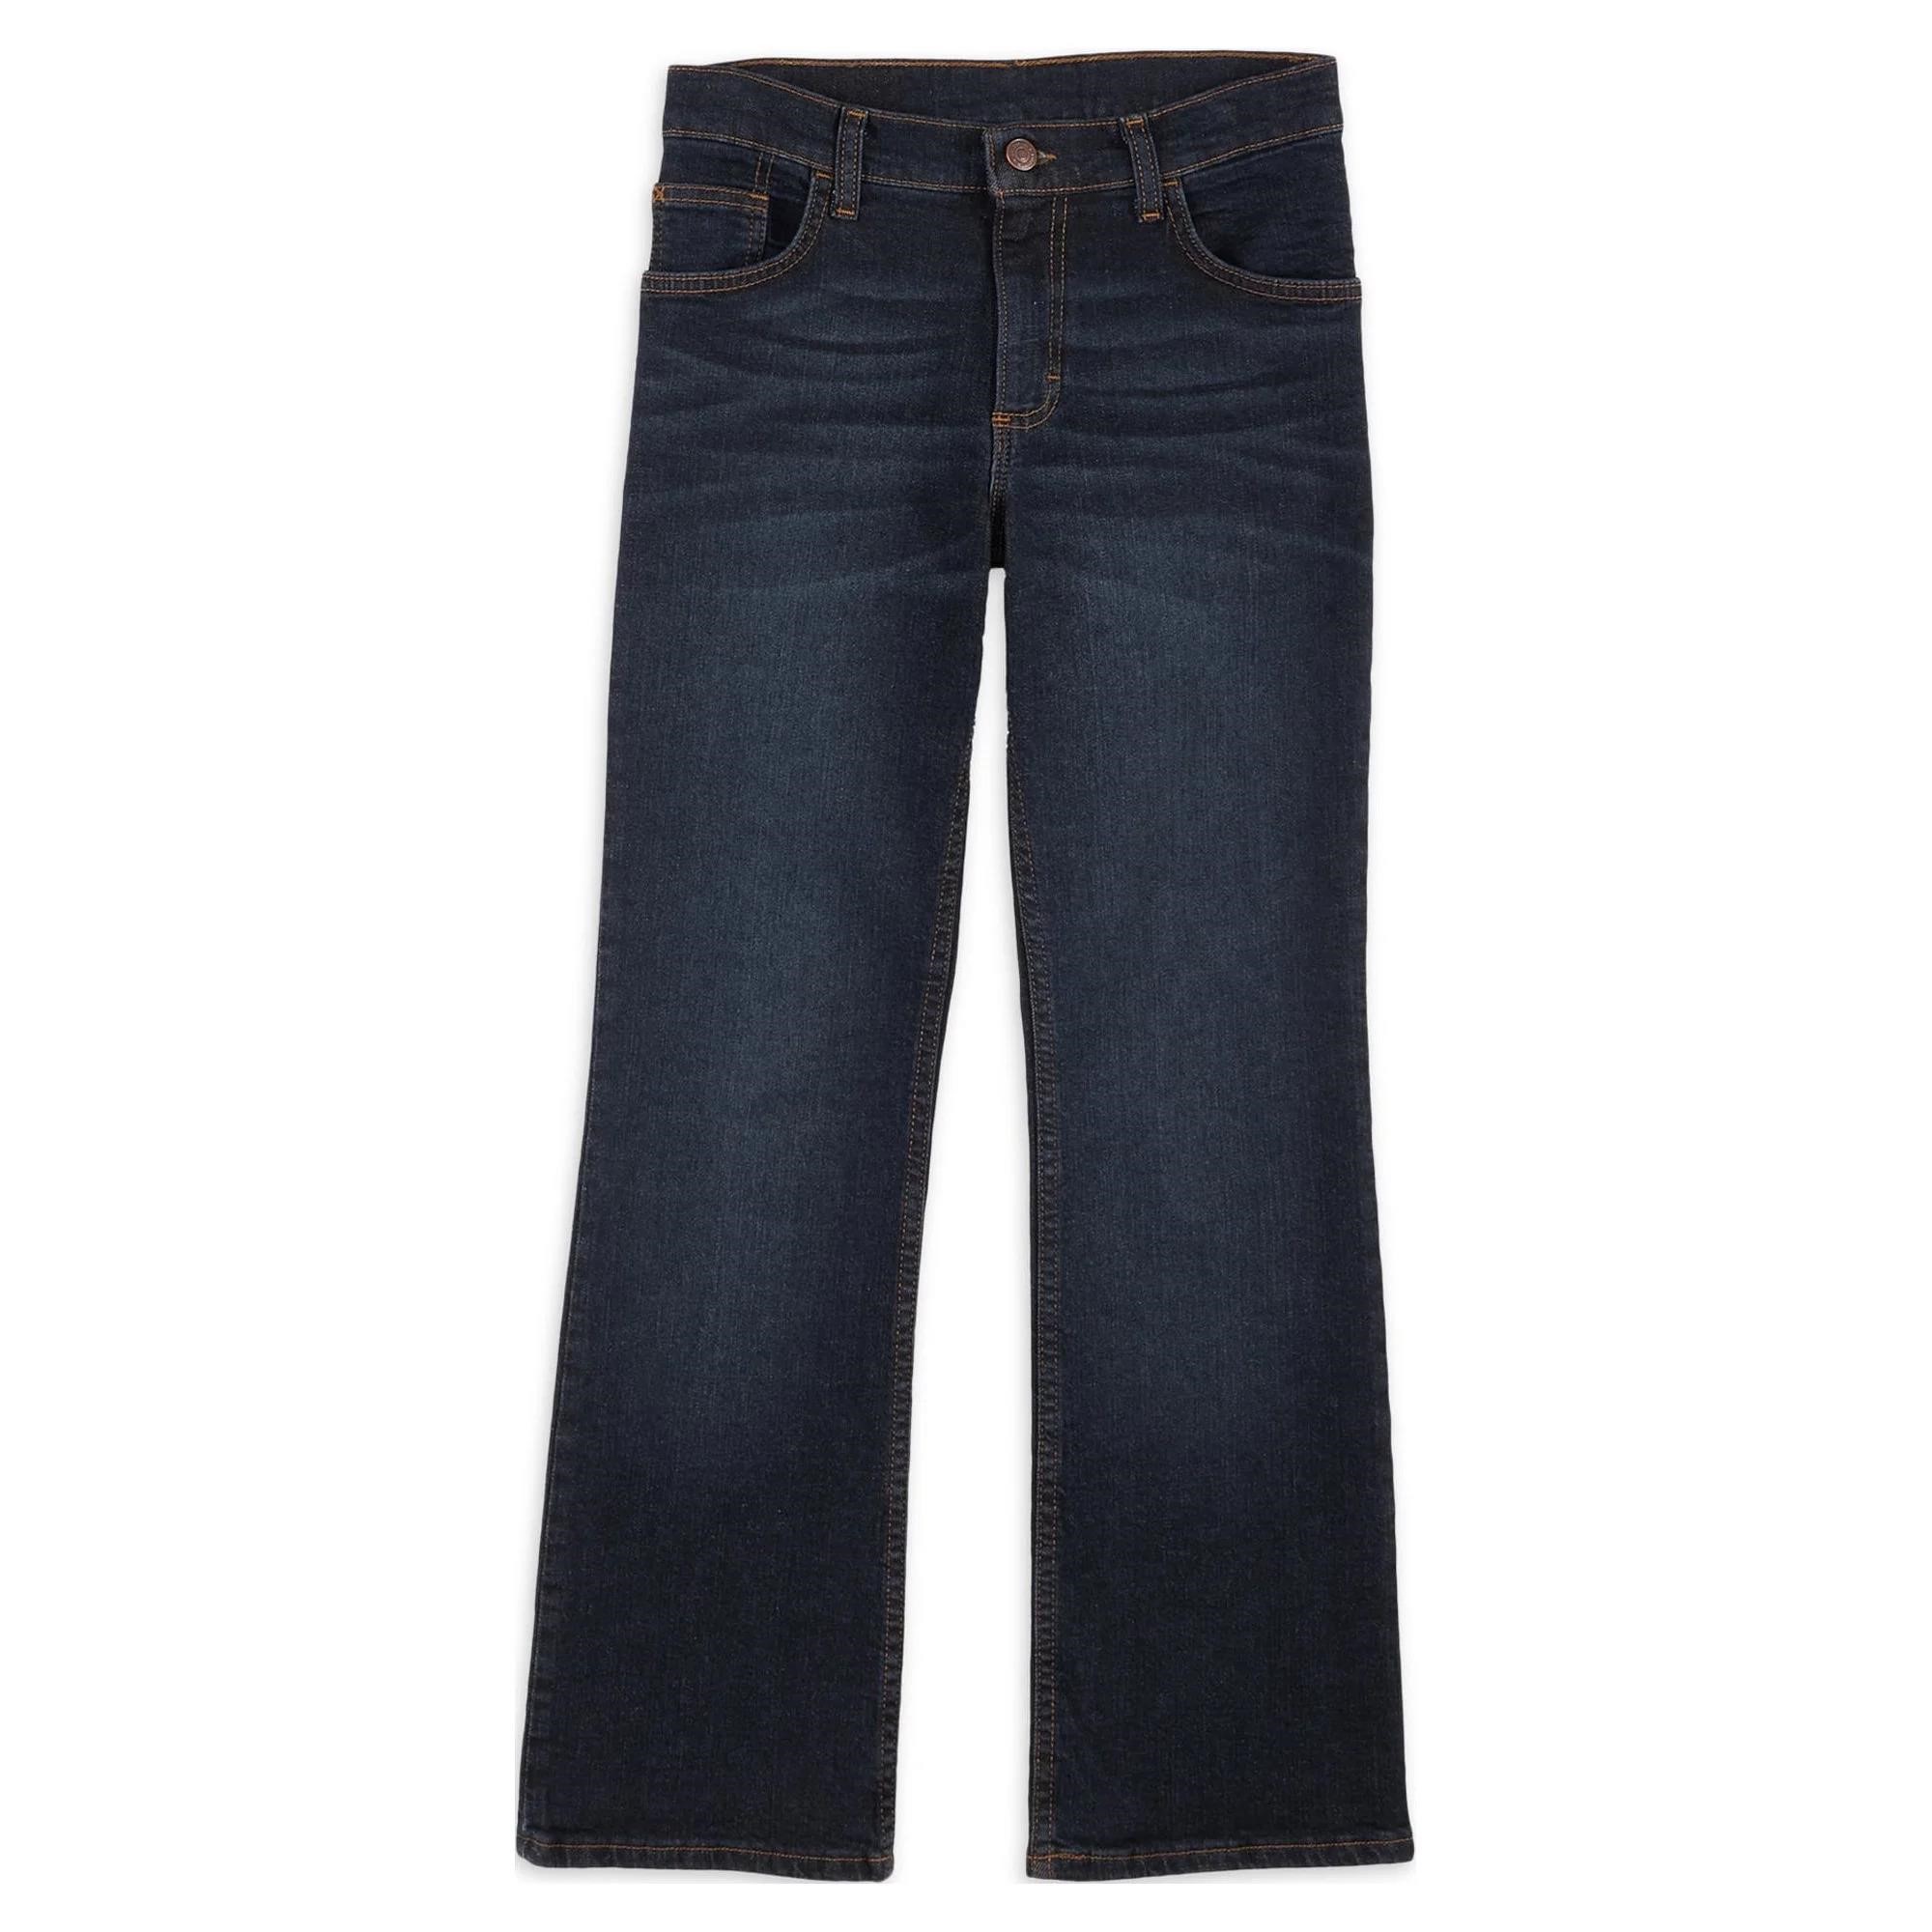 SZ 12 Slim Wrangler Boys Bootcut Denim Jeans AZ18